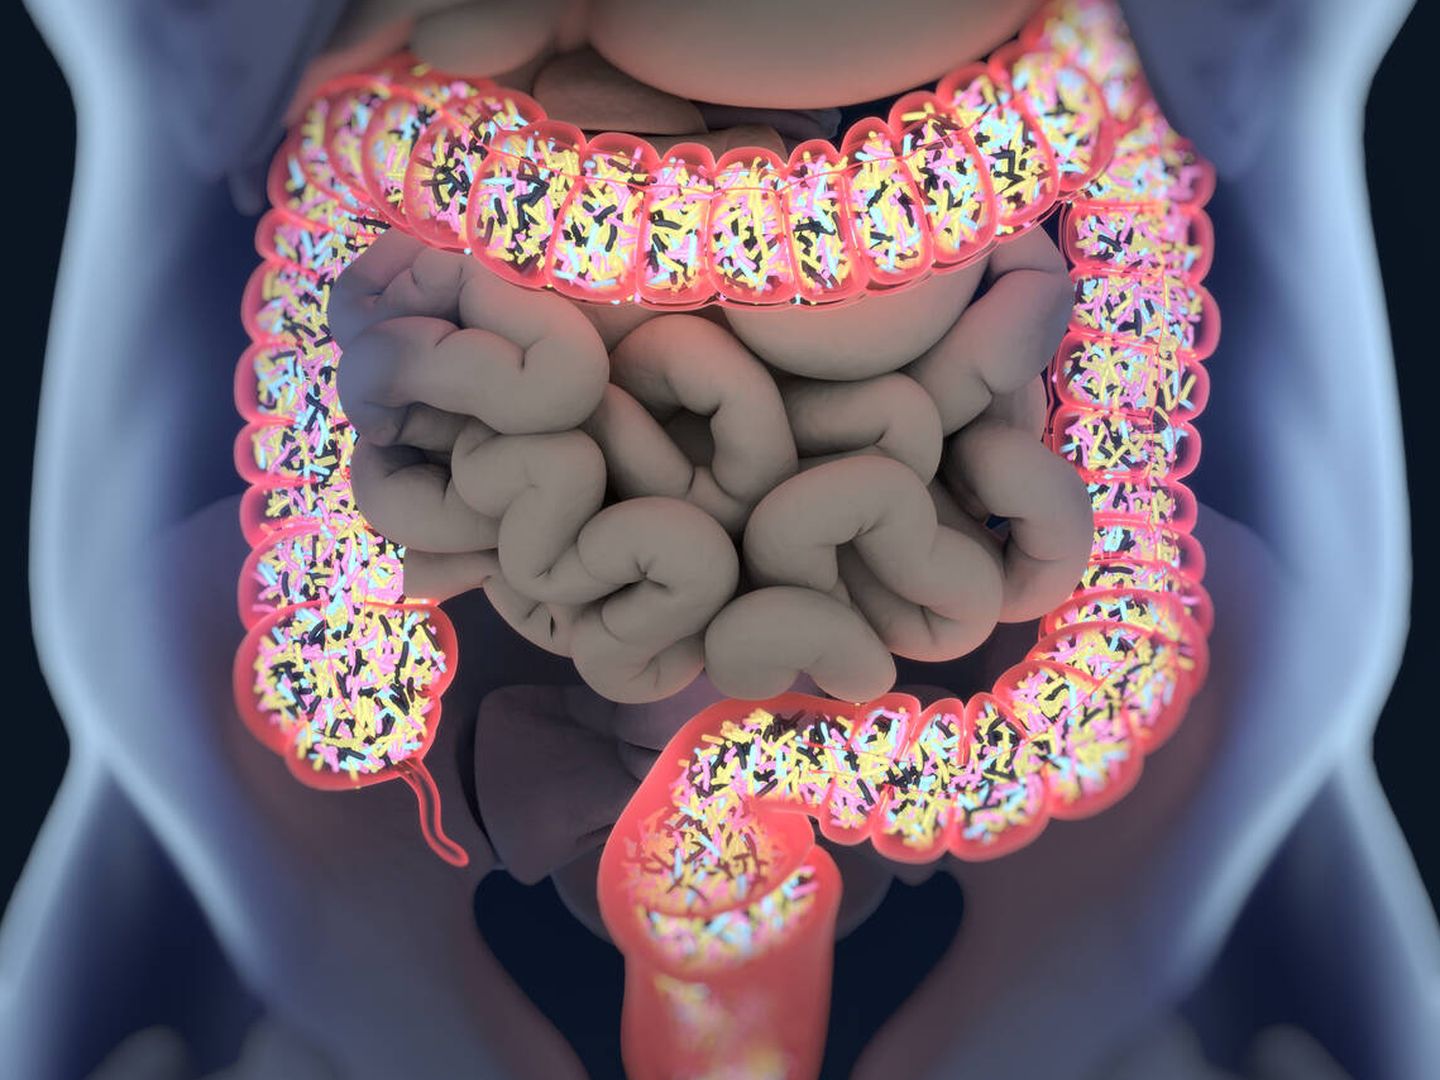 Cualquier desequilibrio en la microbiota intestinal puede tener un reflejo más o menos grave en la salud. (iStock)